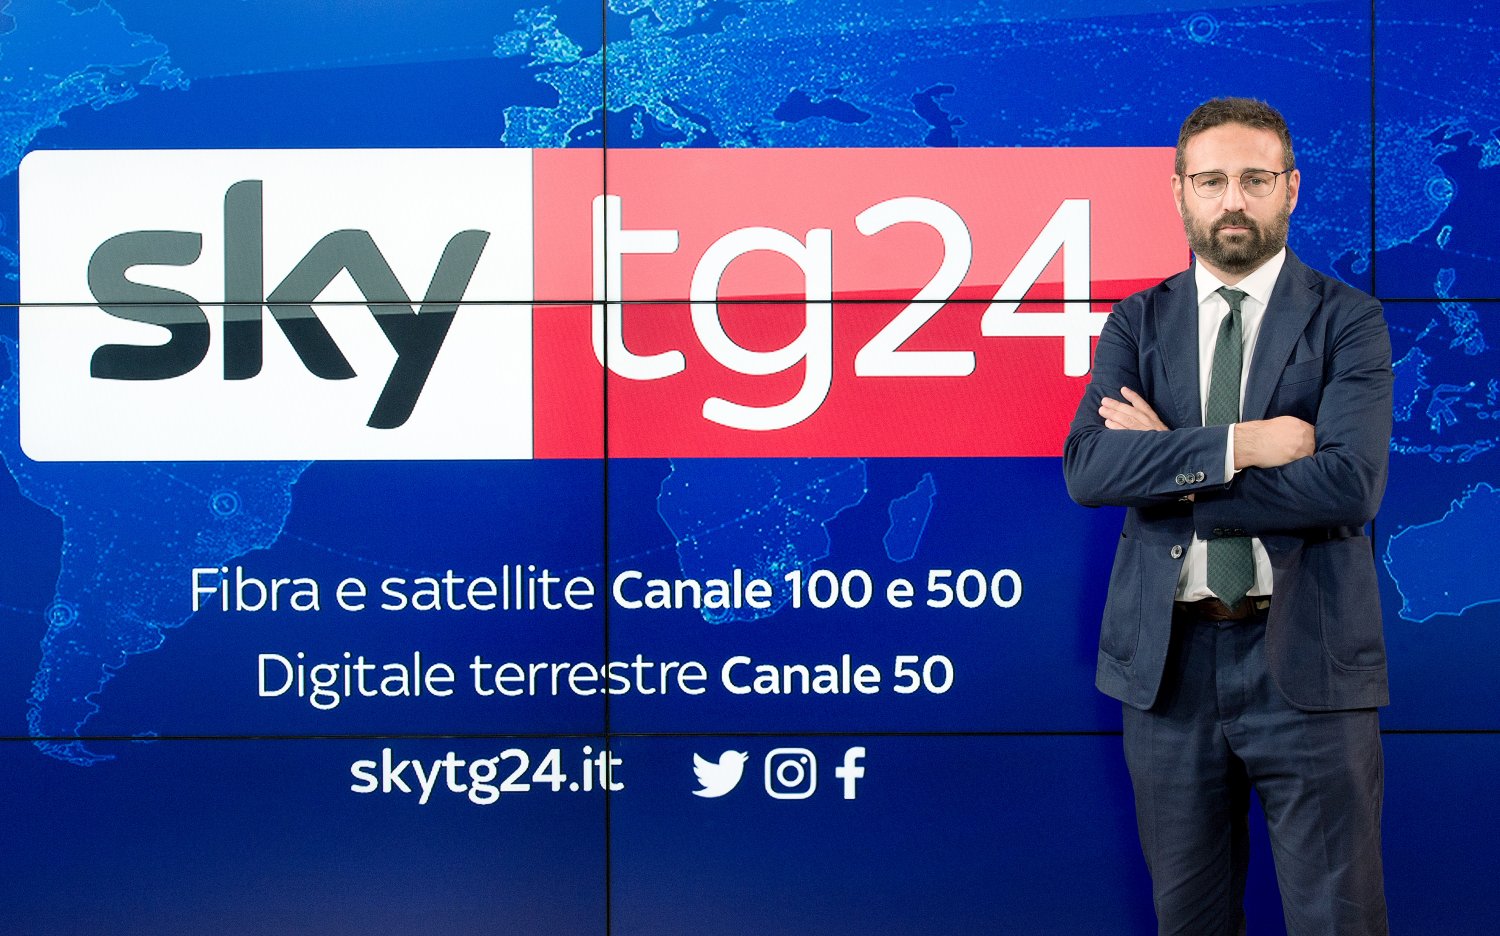 Sky TG24 si rinnova, ancora più contemporaneo e internazionale